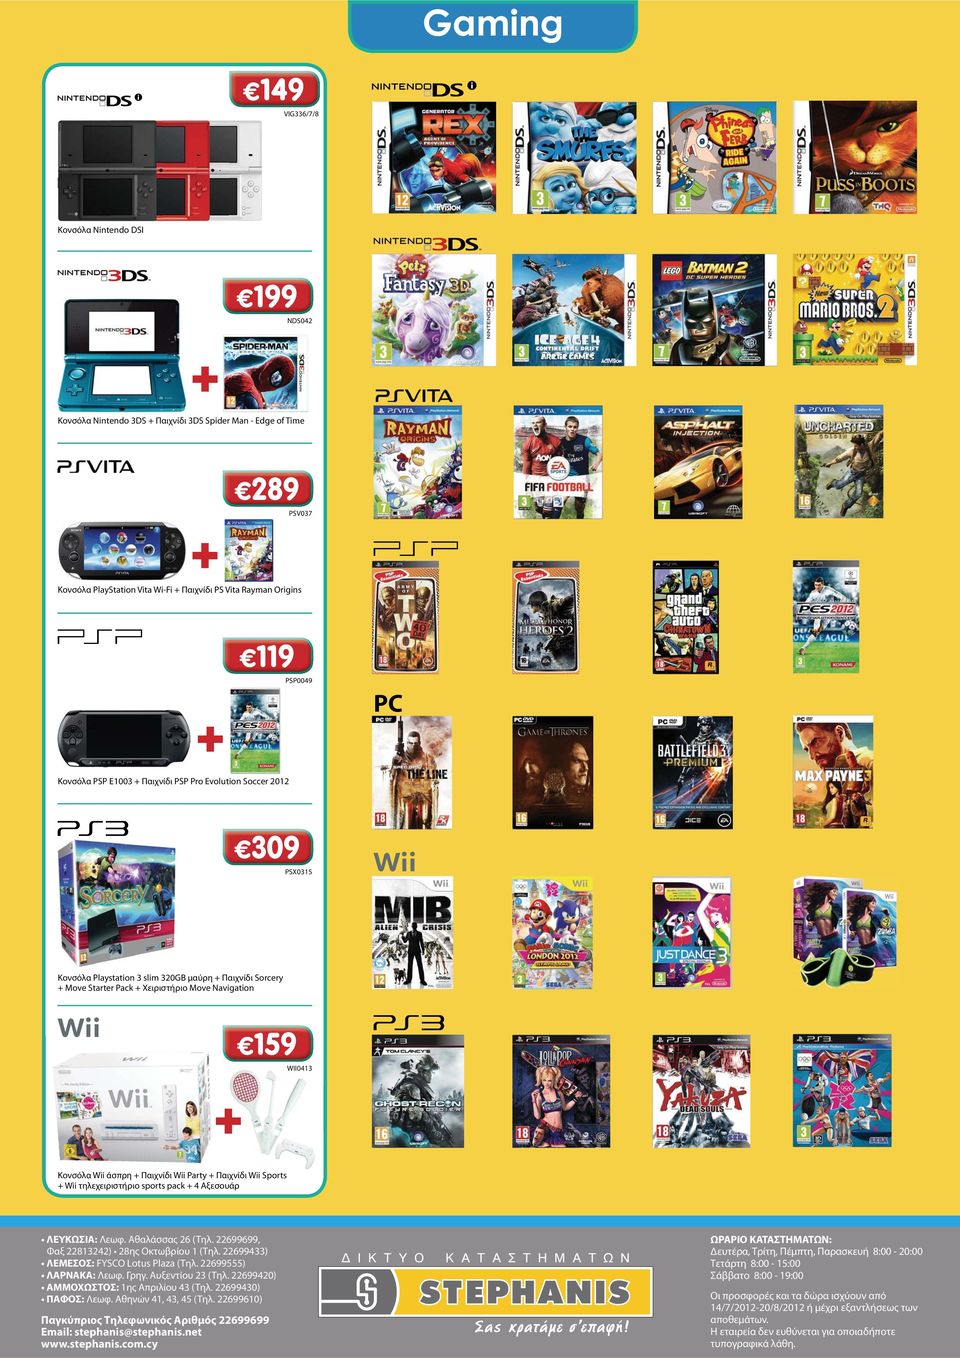 Κονσόλα Wii άσπρη + Παιχνίδι Wii Party + Παιχνίδι Wii Sports +Wii τηλεχειριστήριο sports pack + 4 Αξεσουάρ ΛΕΥΚΩΣΙΑ: Λεωφ. Αθαλάσσας 26 (Τηλ. 22699699, Φαξ 22813242) 28ης Οκτωβρίου 1 (Τηλ.